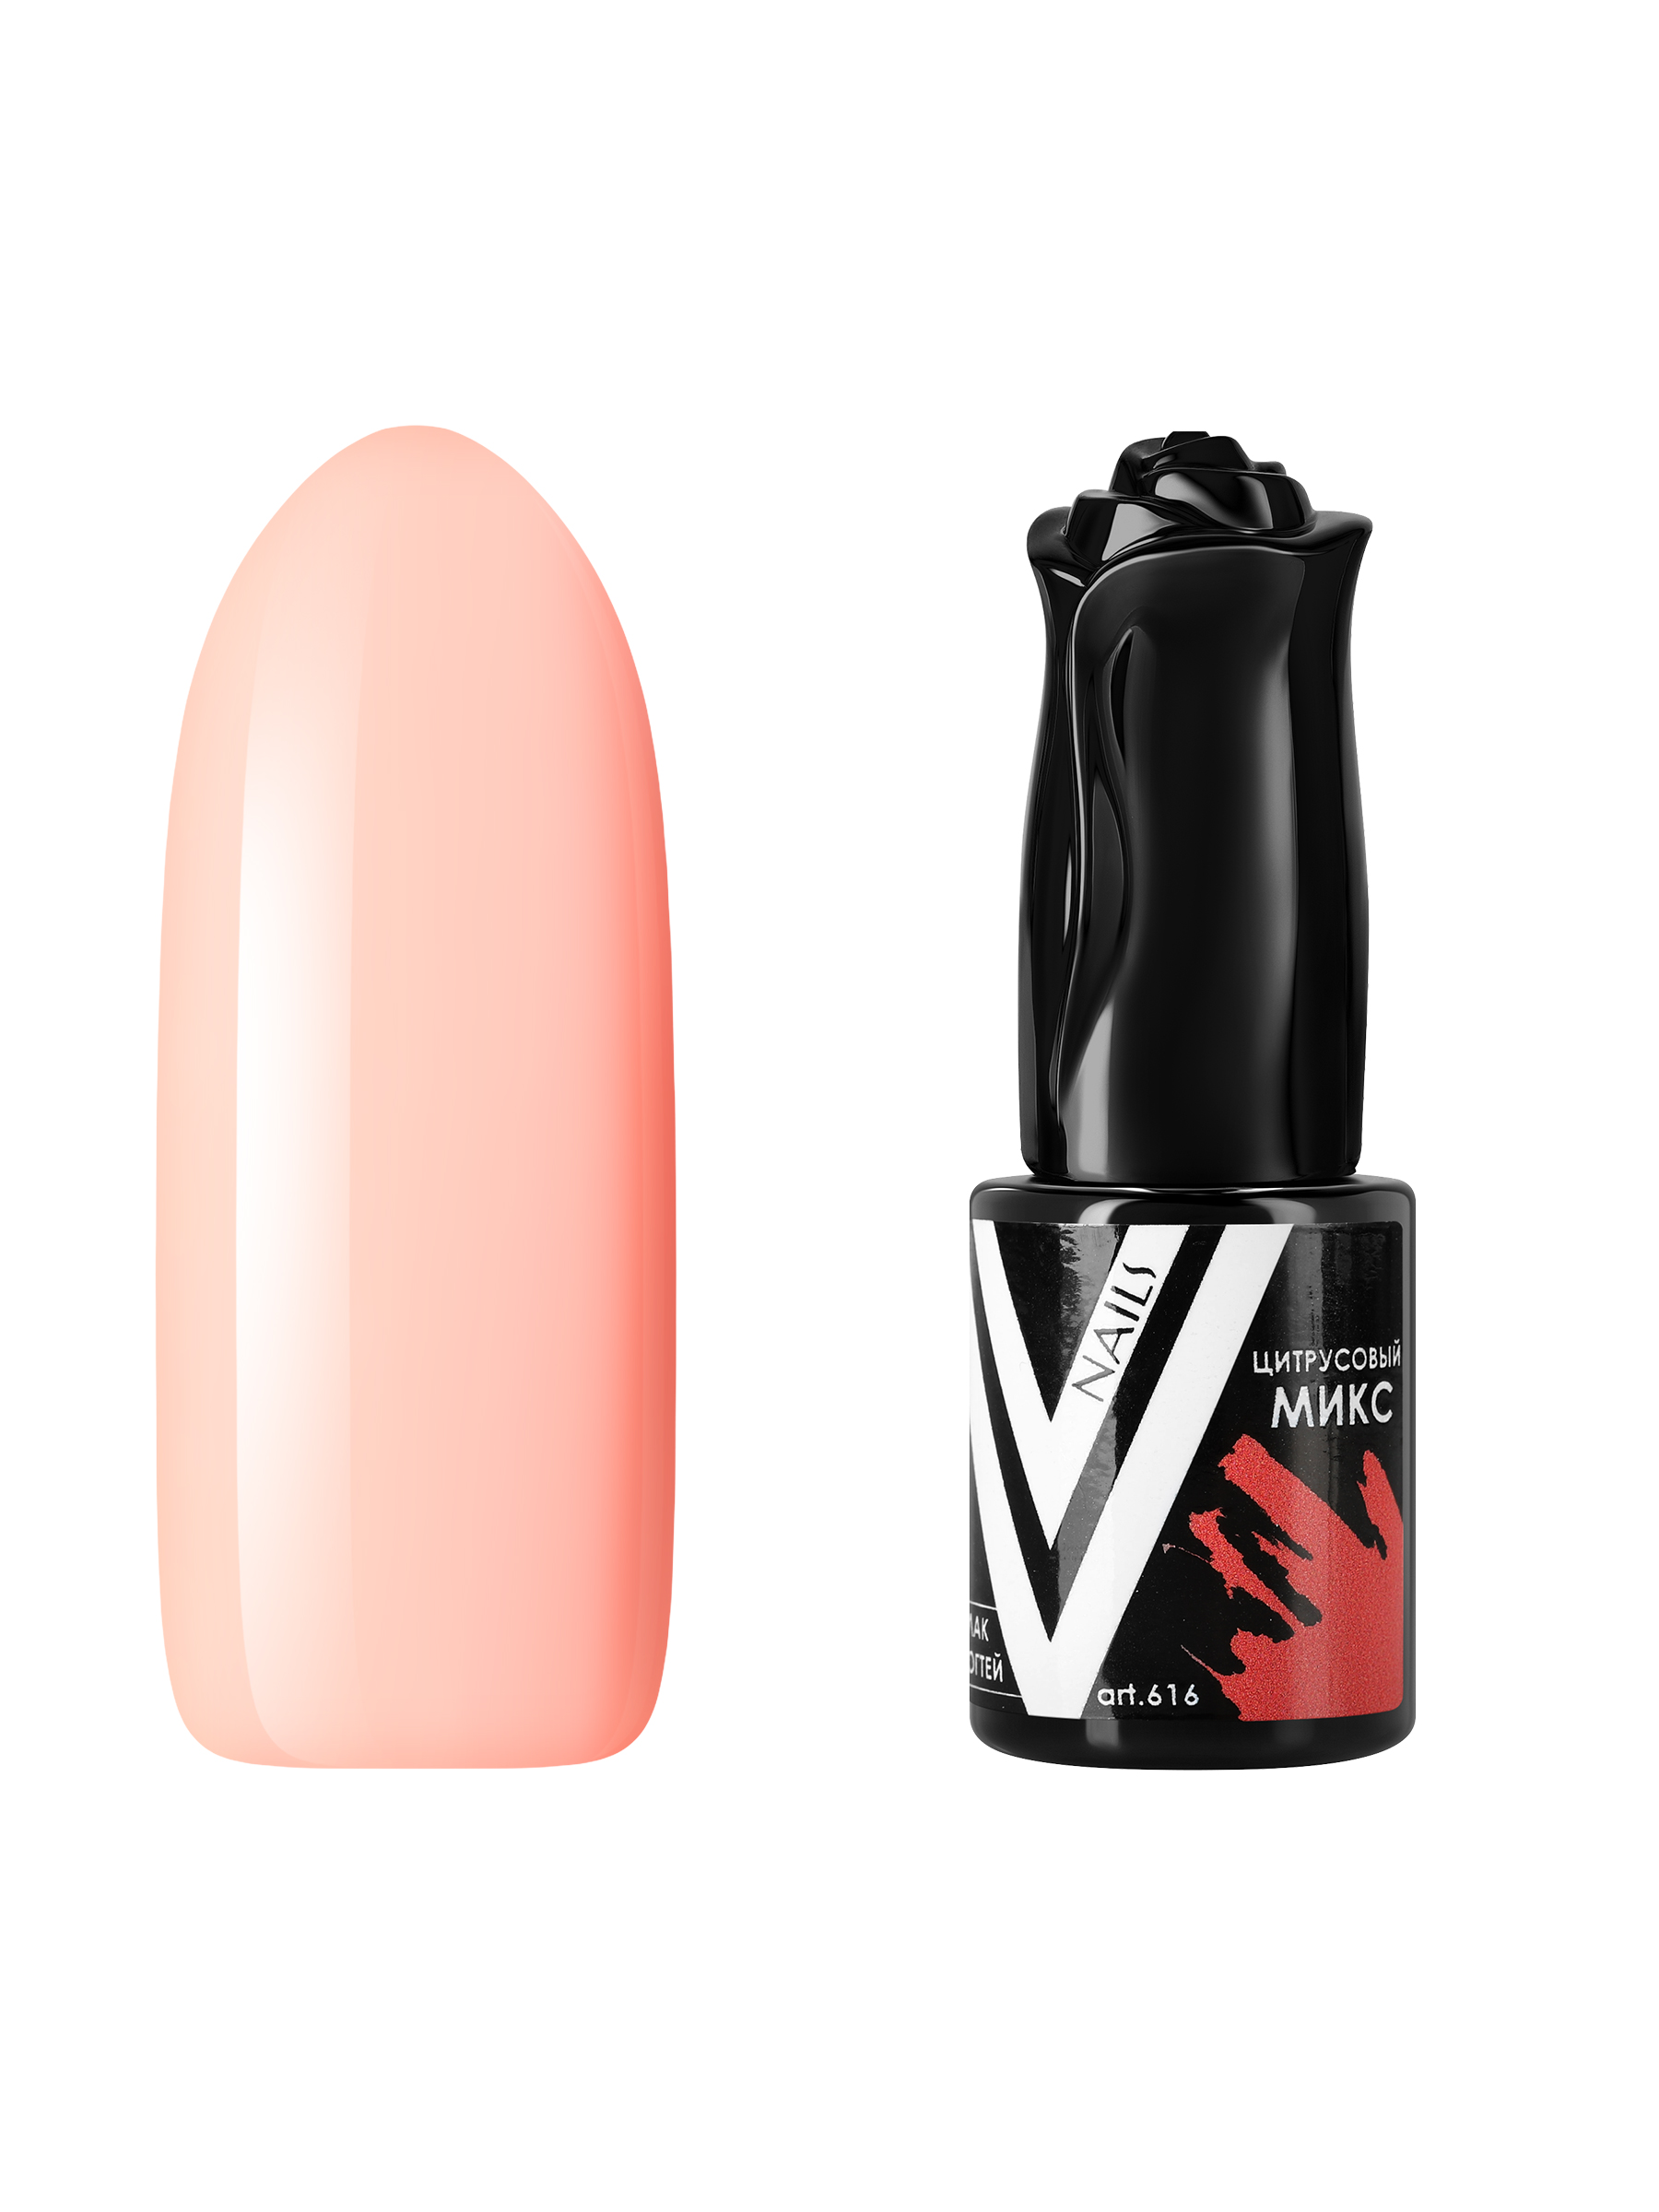 Гель-лак для ногтей Vogue Nails плотный, самовыравнивающийся, светлый, бежевый, 10 мл пудра artdeco запасной блок 05 бежевый светлый